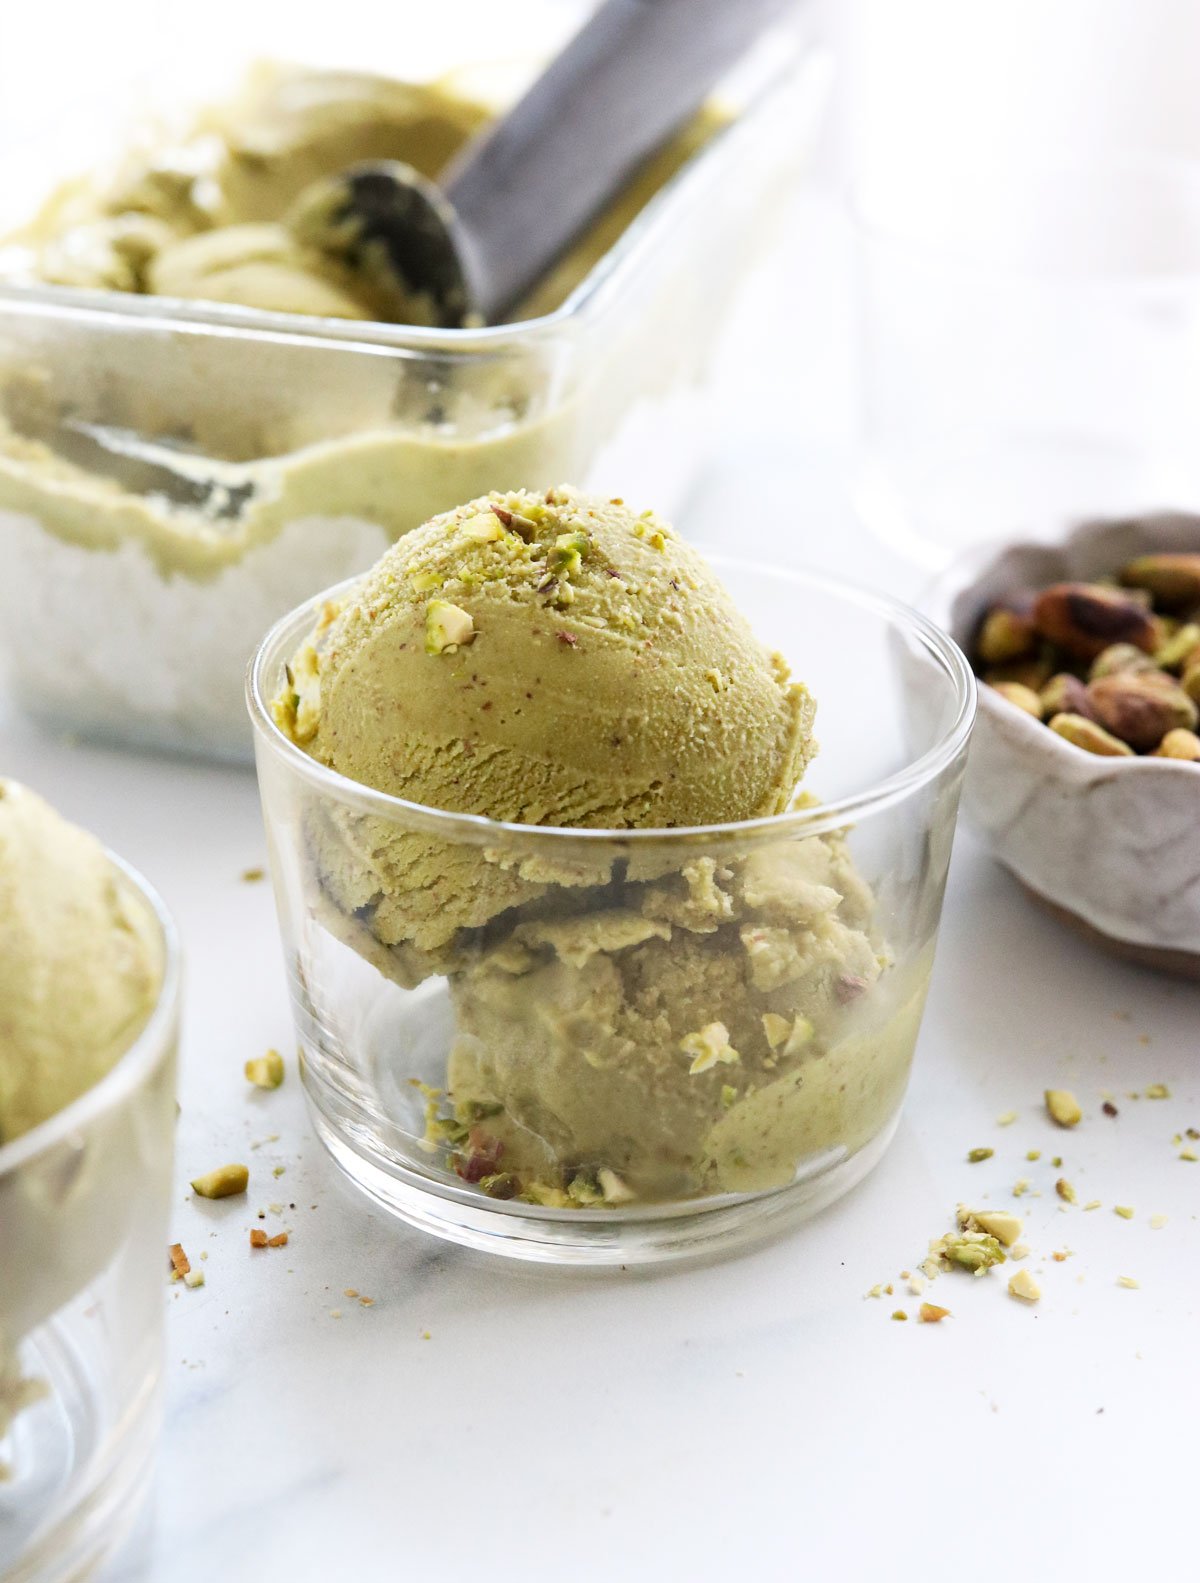 pistachio ice cream in glass serving dish